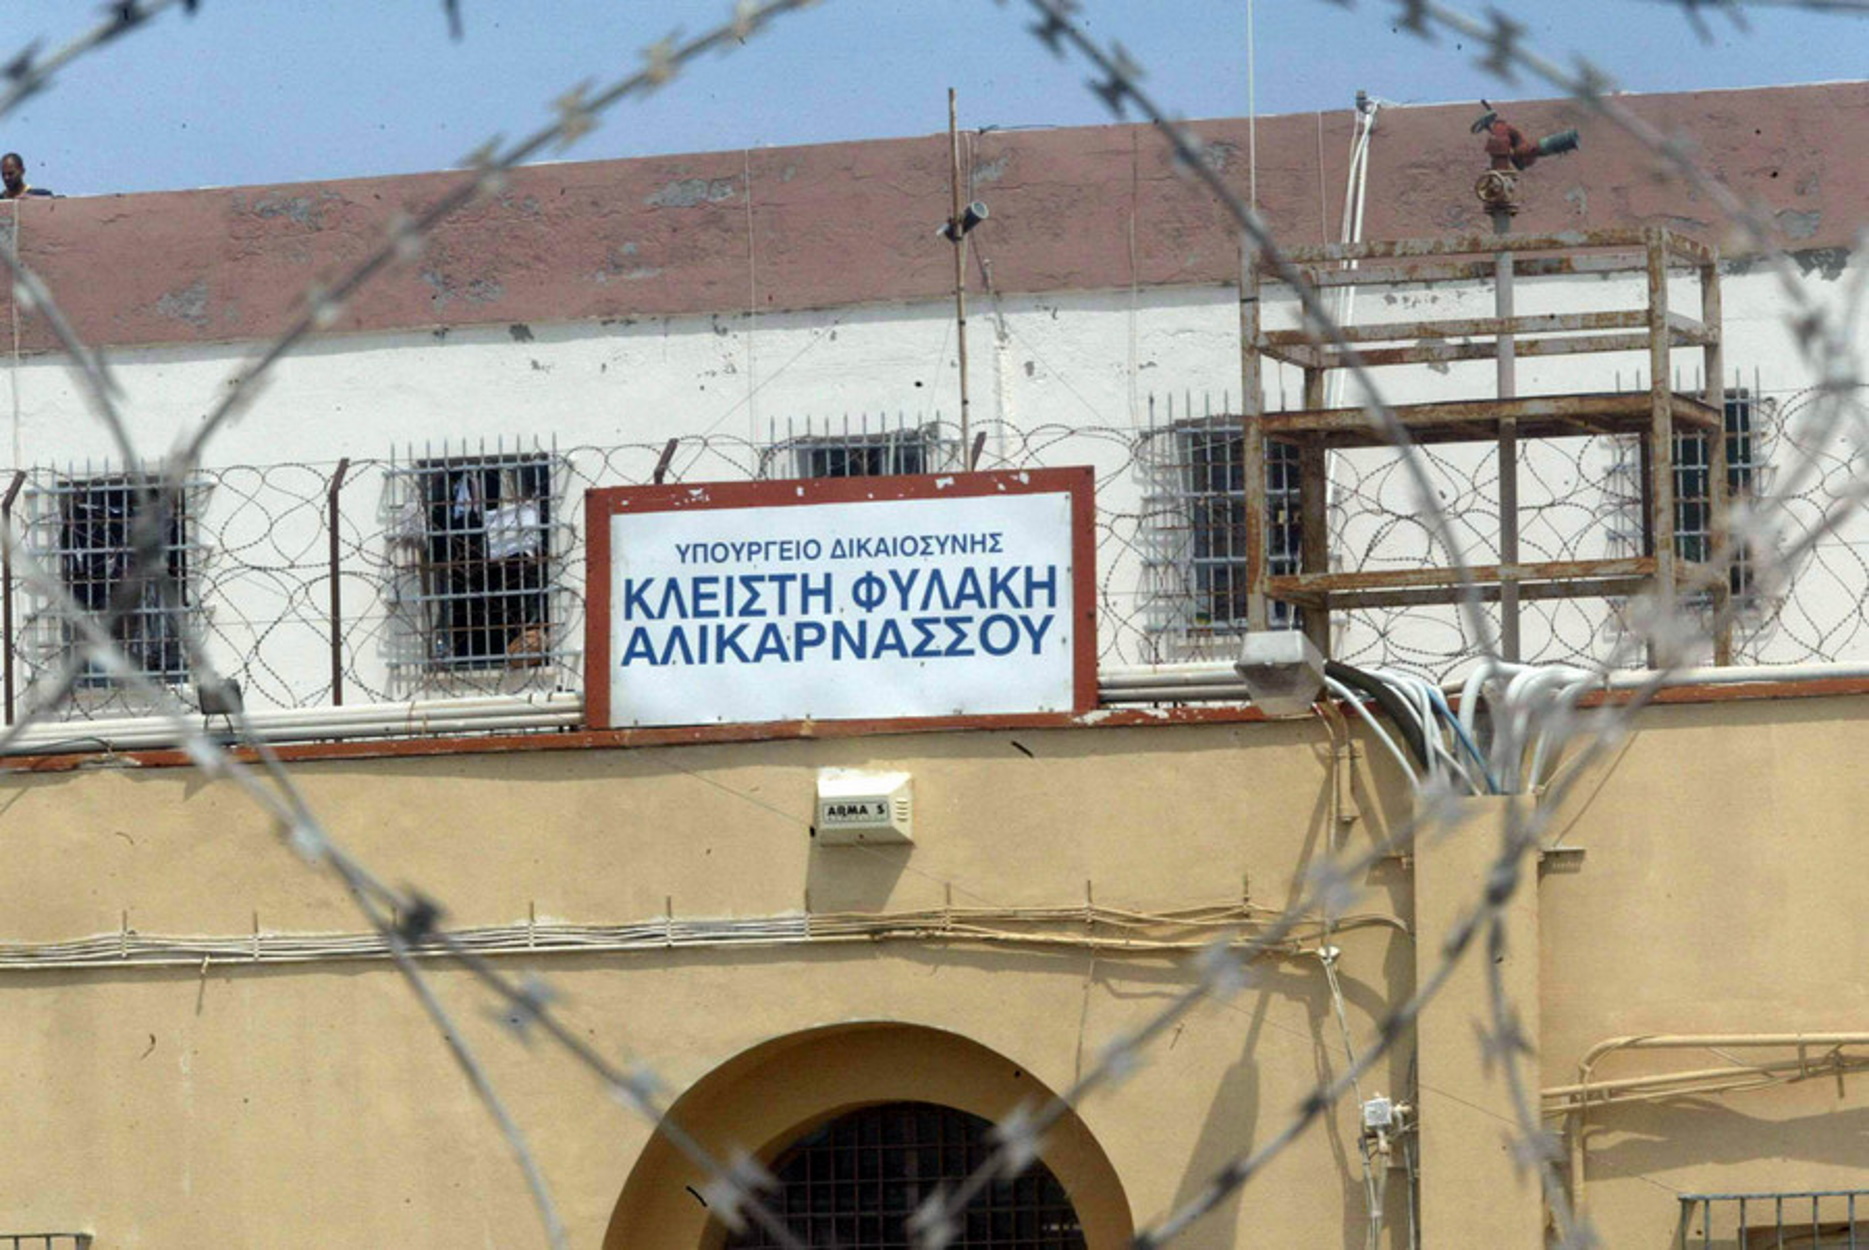 Ηράκλειο: Βίαια επεισόδια στις φυλακές Αλικαρνασσού – 3 κρατούμενοι στην ΜΕΘ